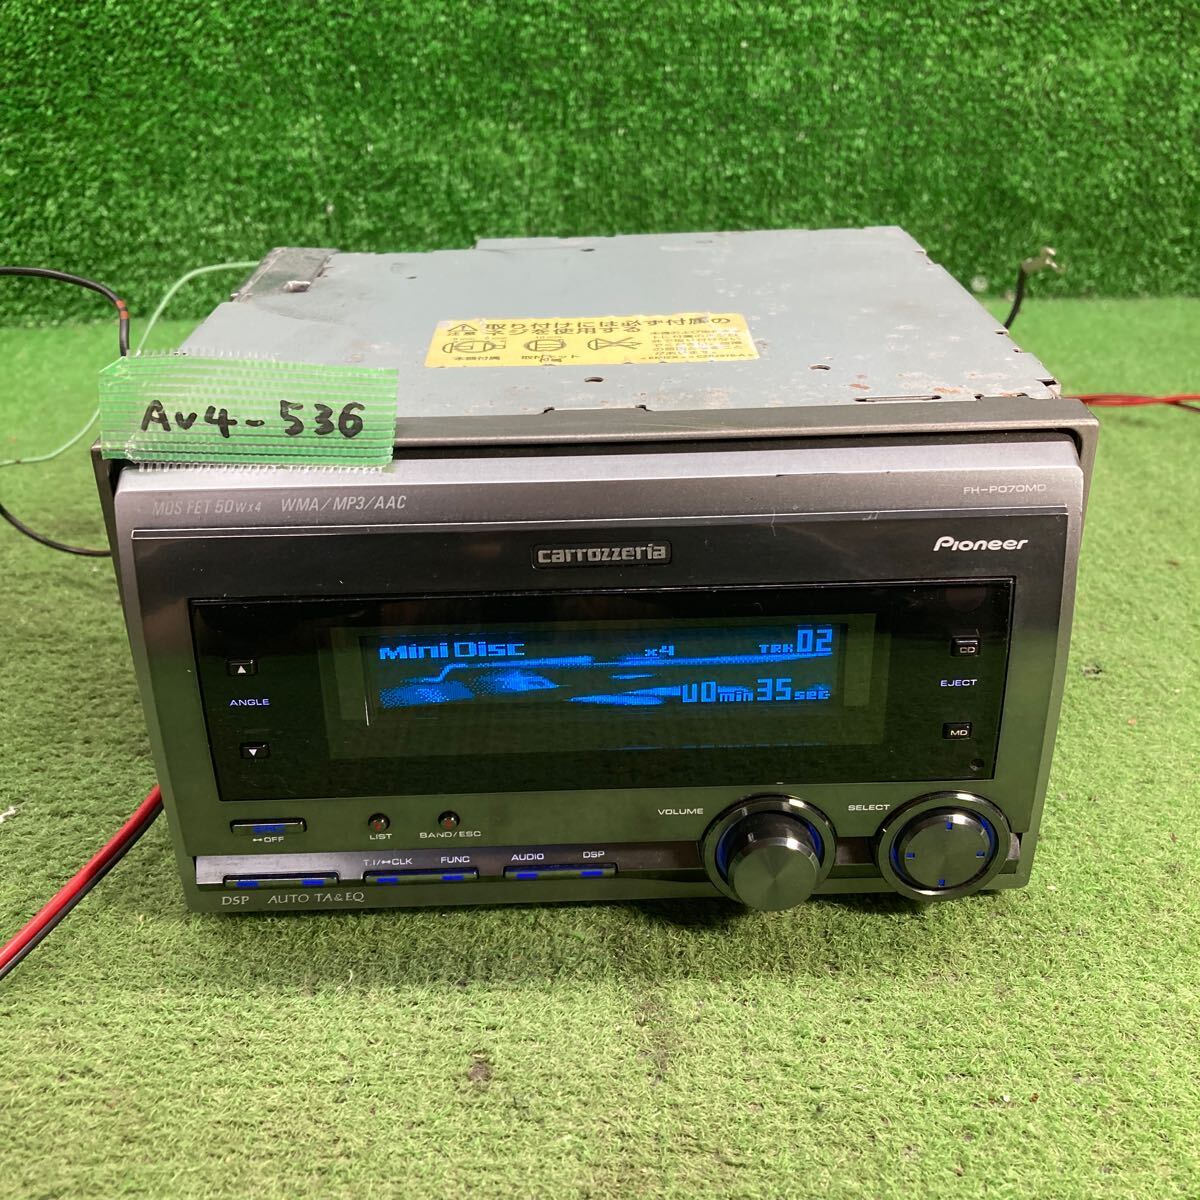 AV4-536 супер-скидка машина стерео CARROZZERIA PIONEER FH-P070MD EFTR010548 CD MD FM корпус только простой рабочее состояние подтверждено б/у текущее состояние товар 